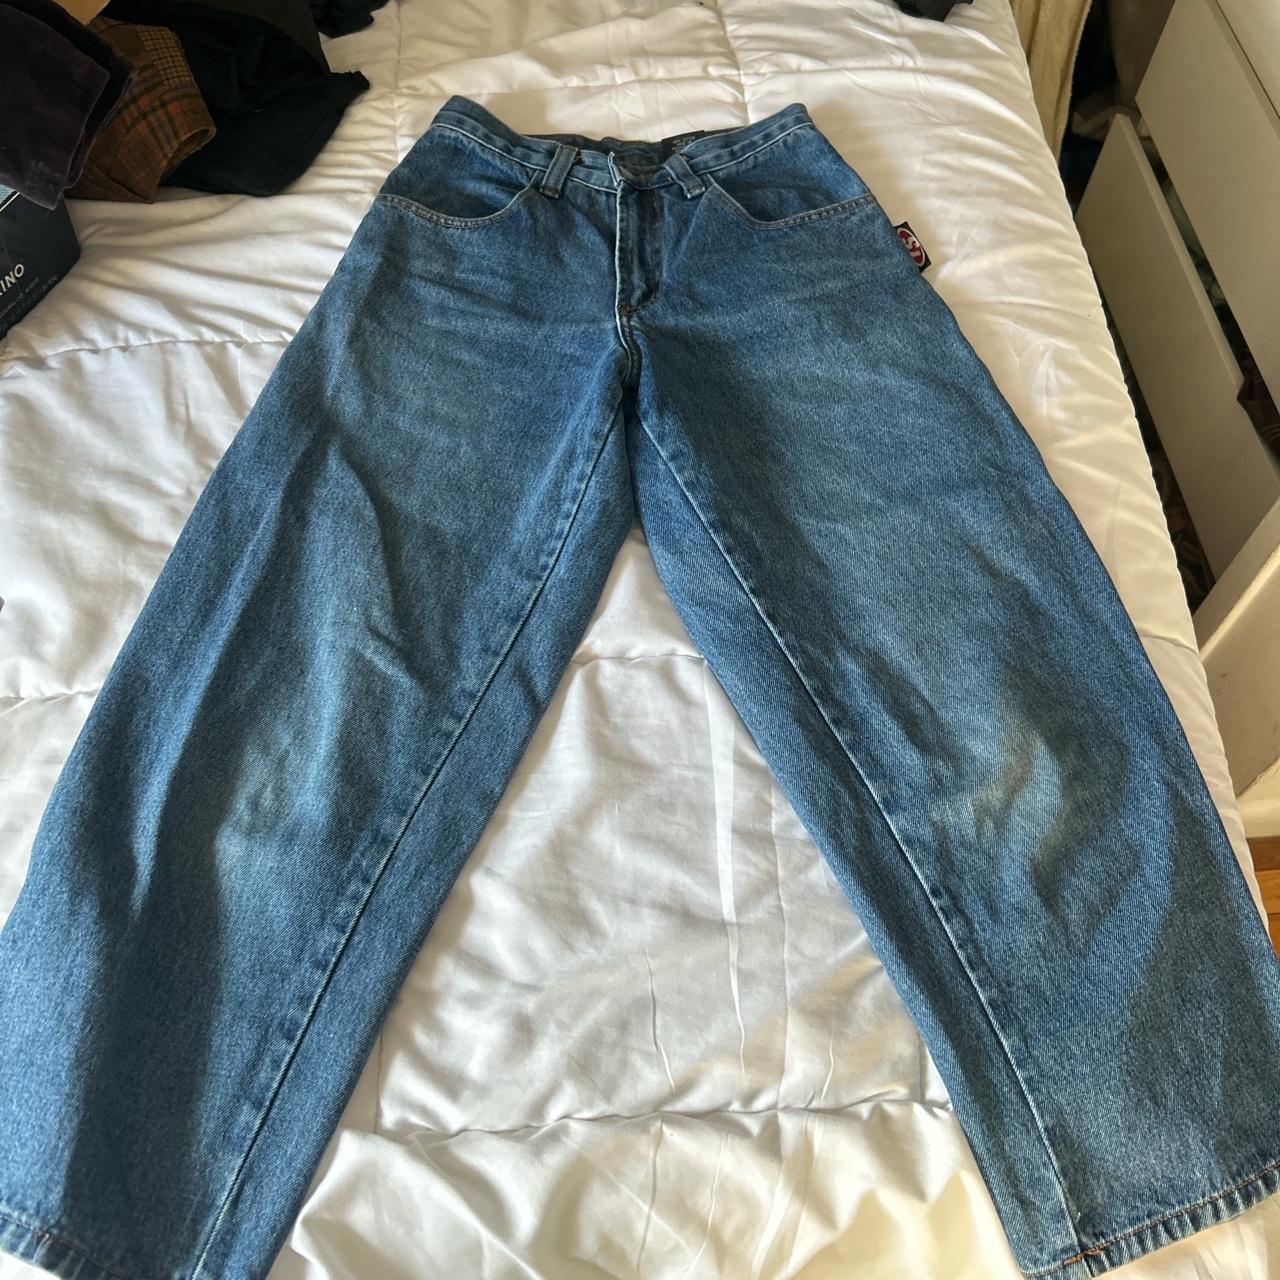 Vintage 90s interstate baggy skate jeans size 26 X... - Depop